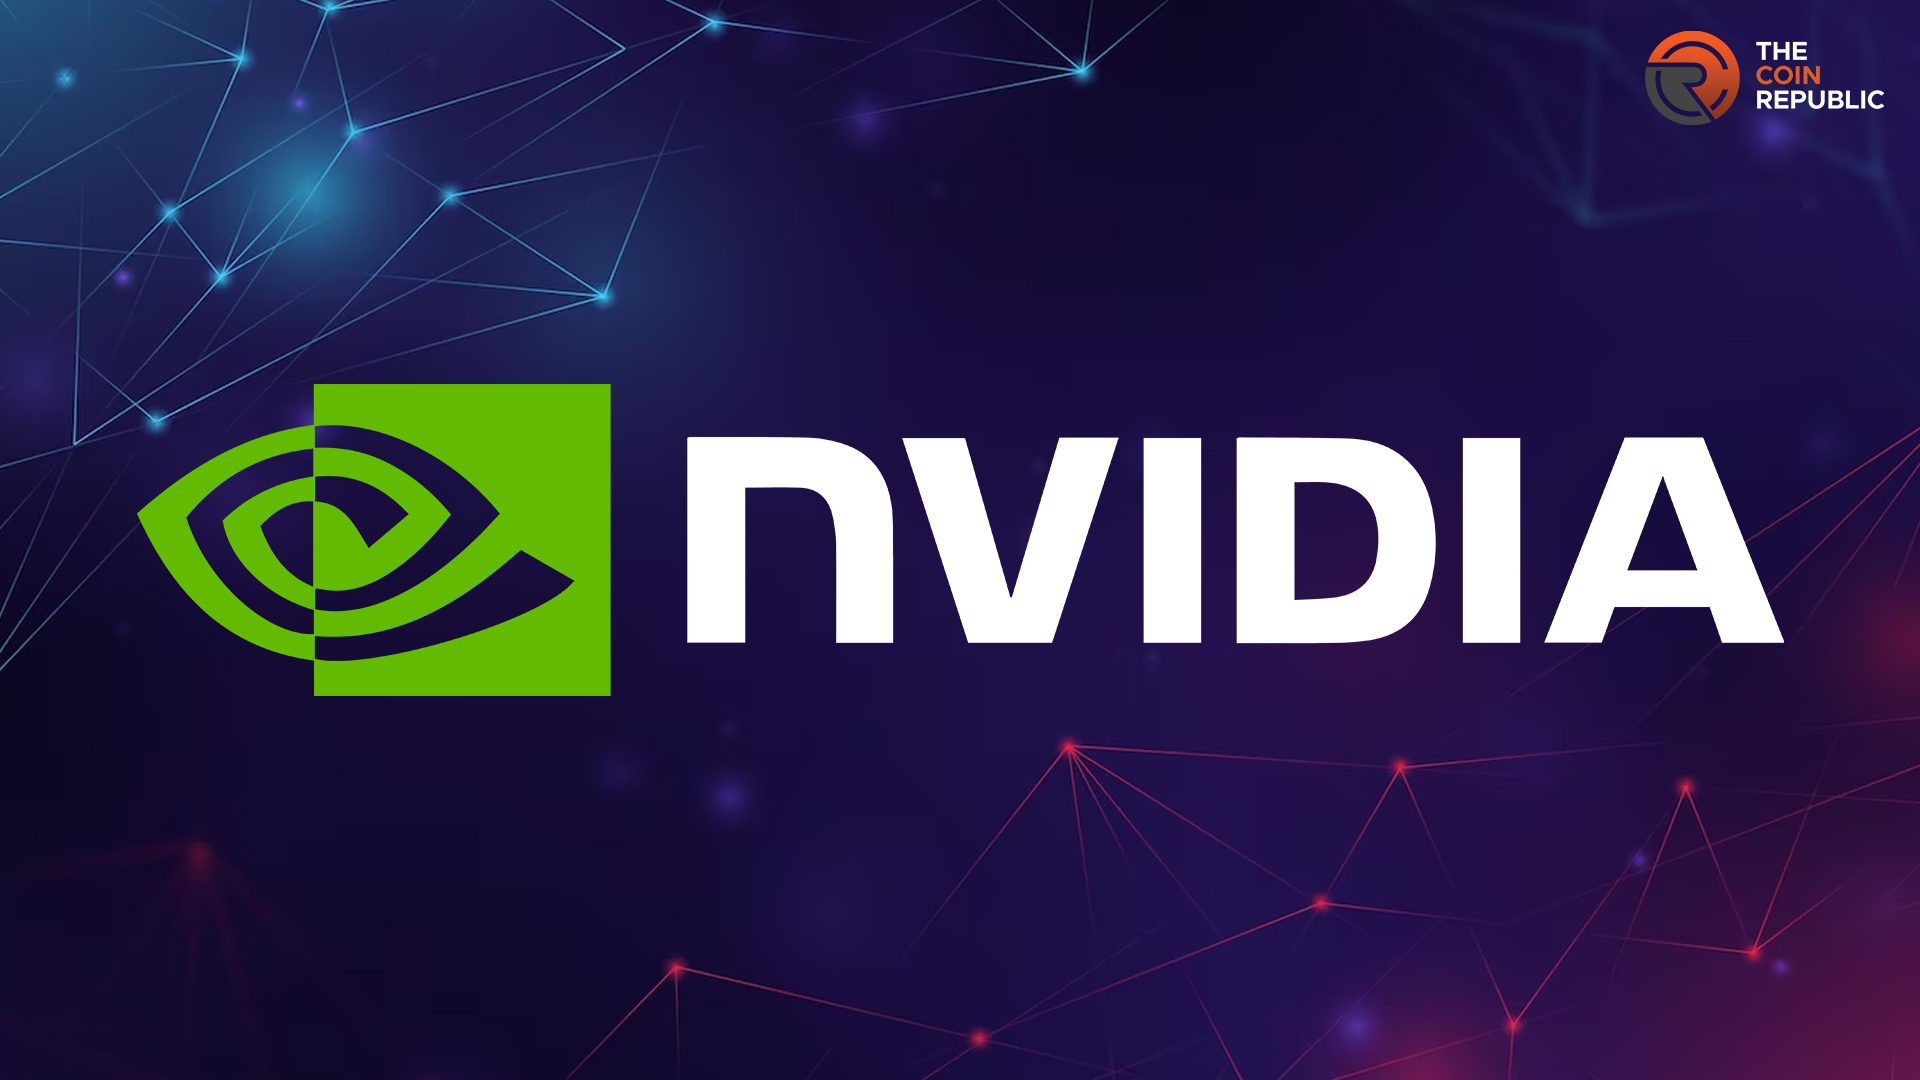 NVIDIA Corp: Will NVIDIA Stock Price Slip Further Towards $410?